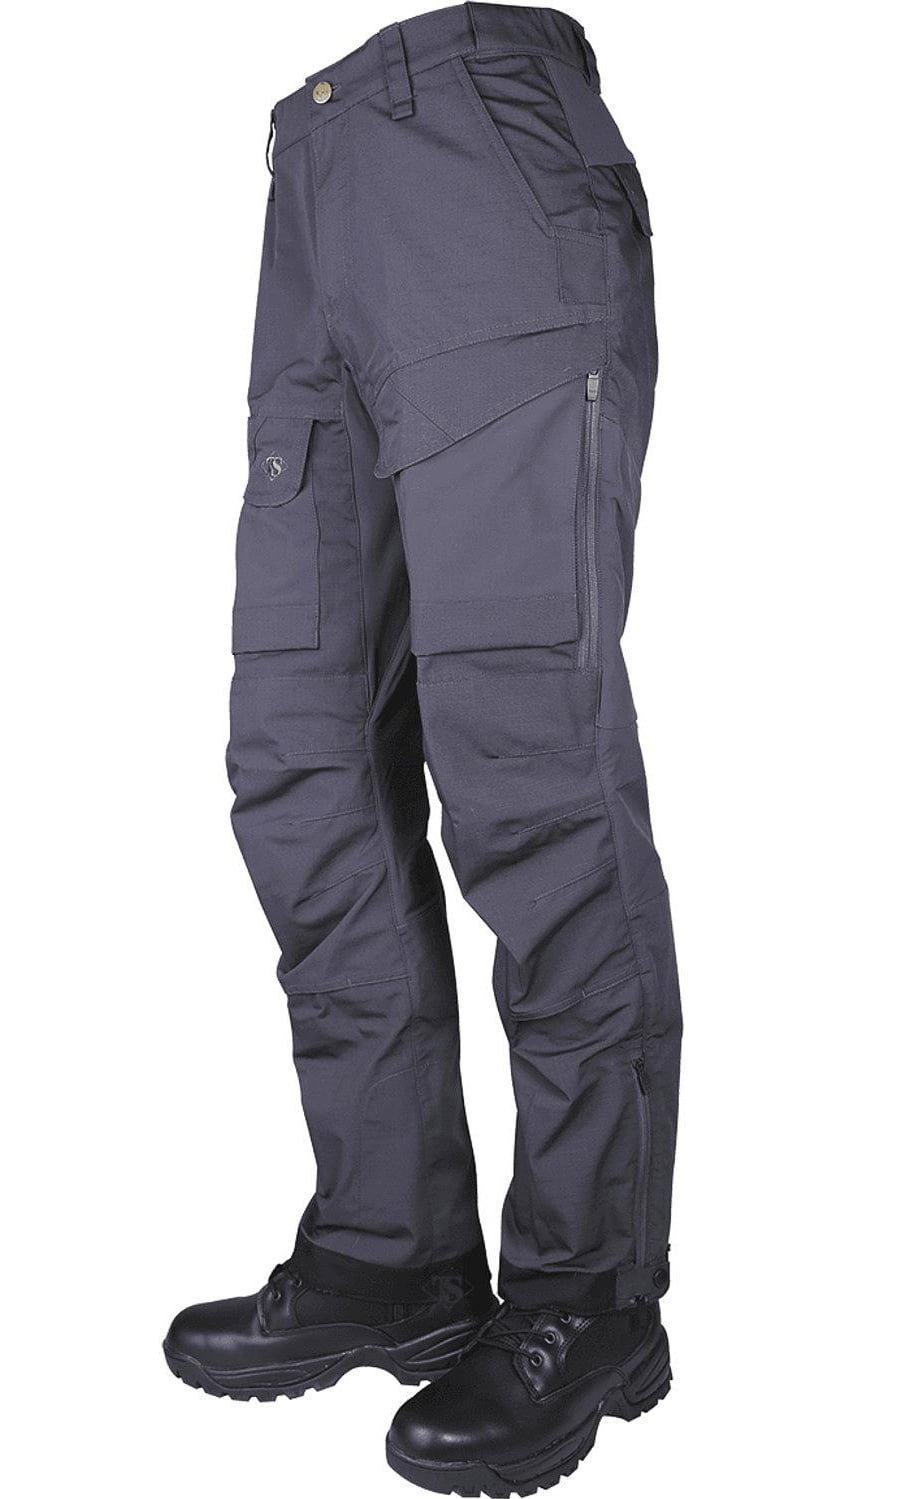 Tru-Spec 24-7 Xpedition Mens Pants, Charcoal, 32 32, - Walmart.com